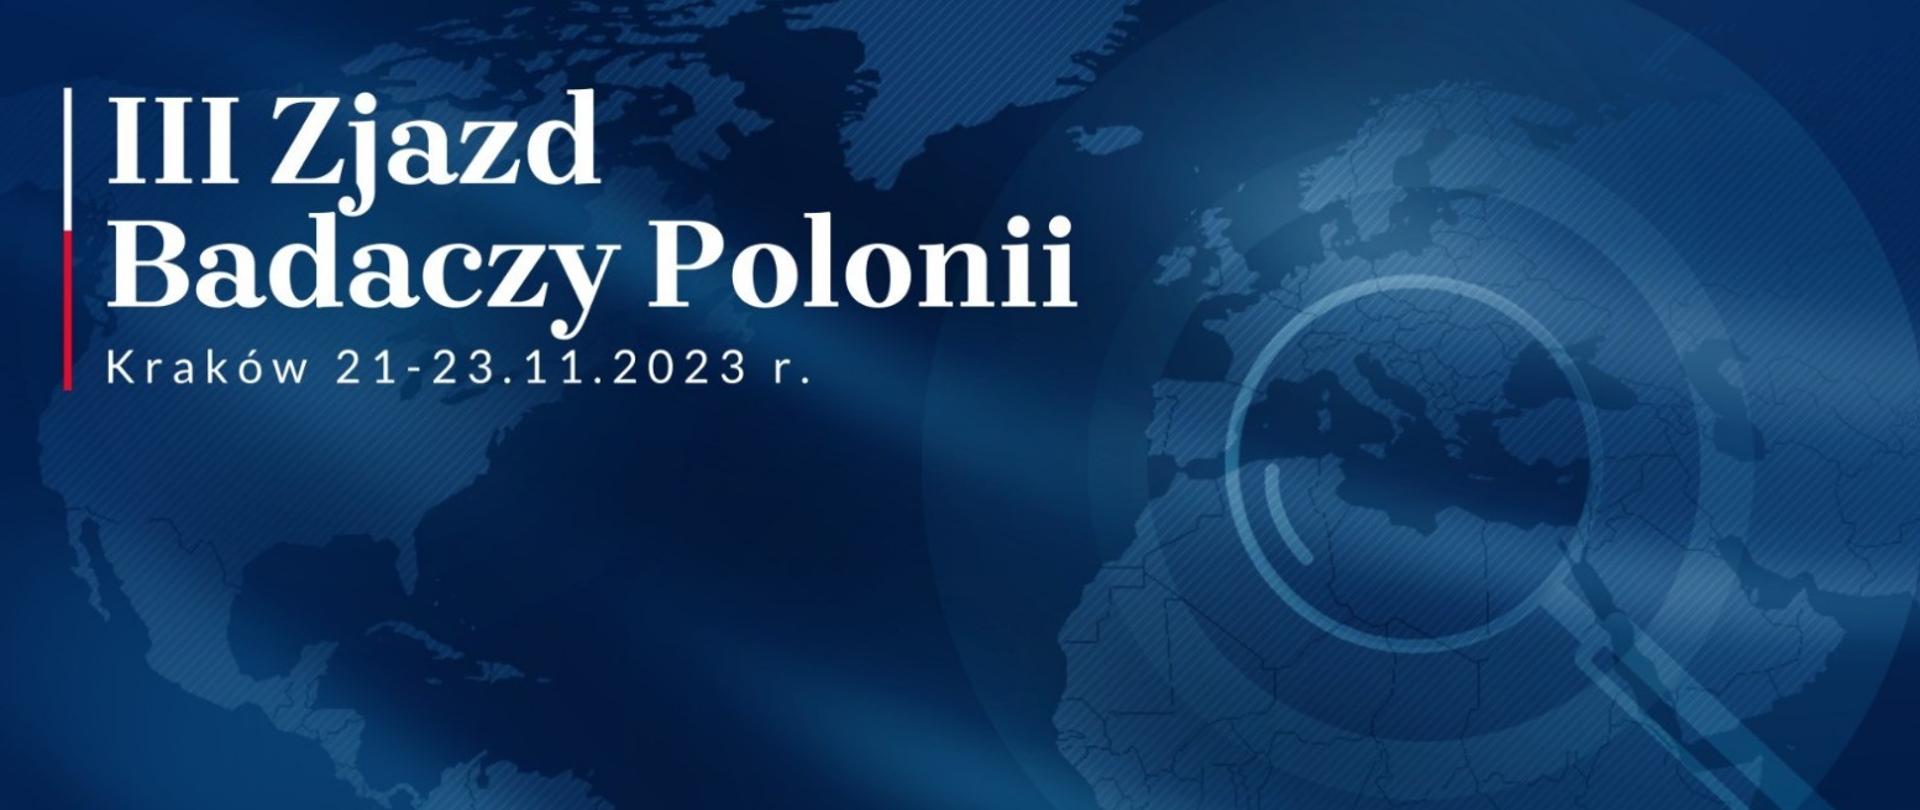 III Zjazd Badaczy Polonii